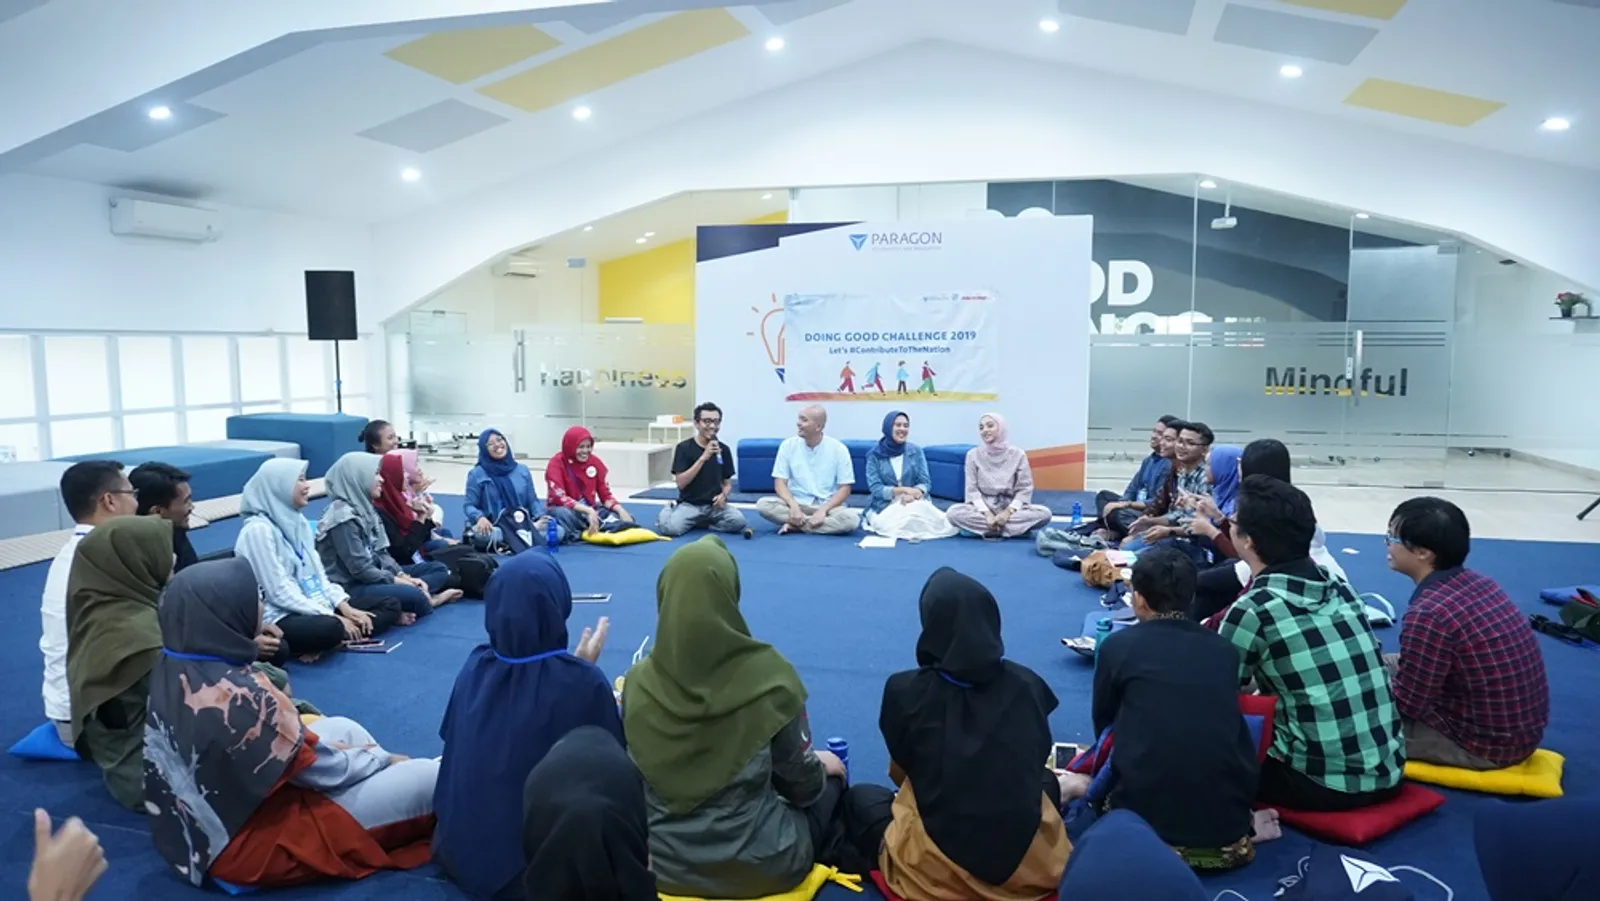 PARAGON-BERMAKNA, Inovasi Paragon untuk Pendidikan Indonesia